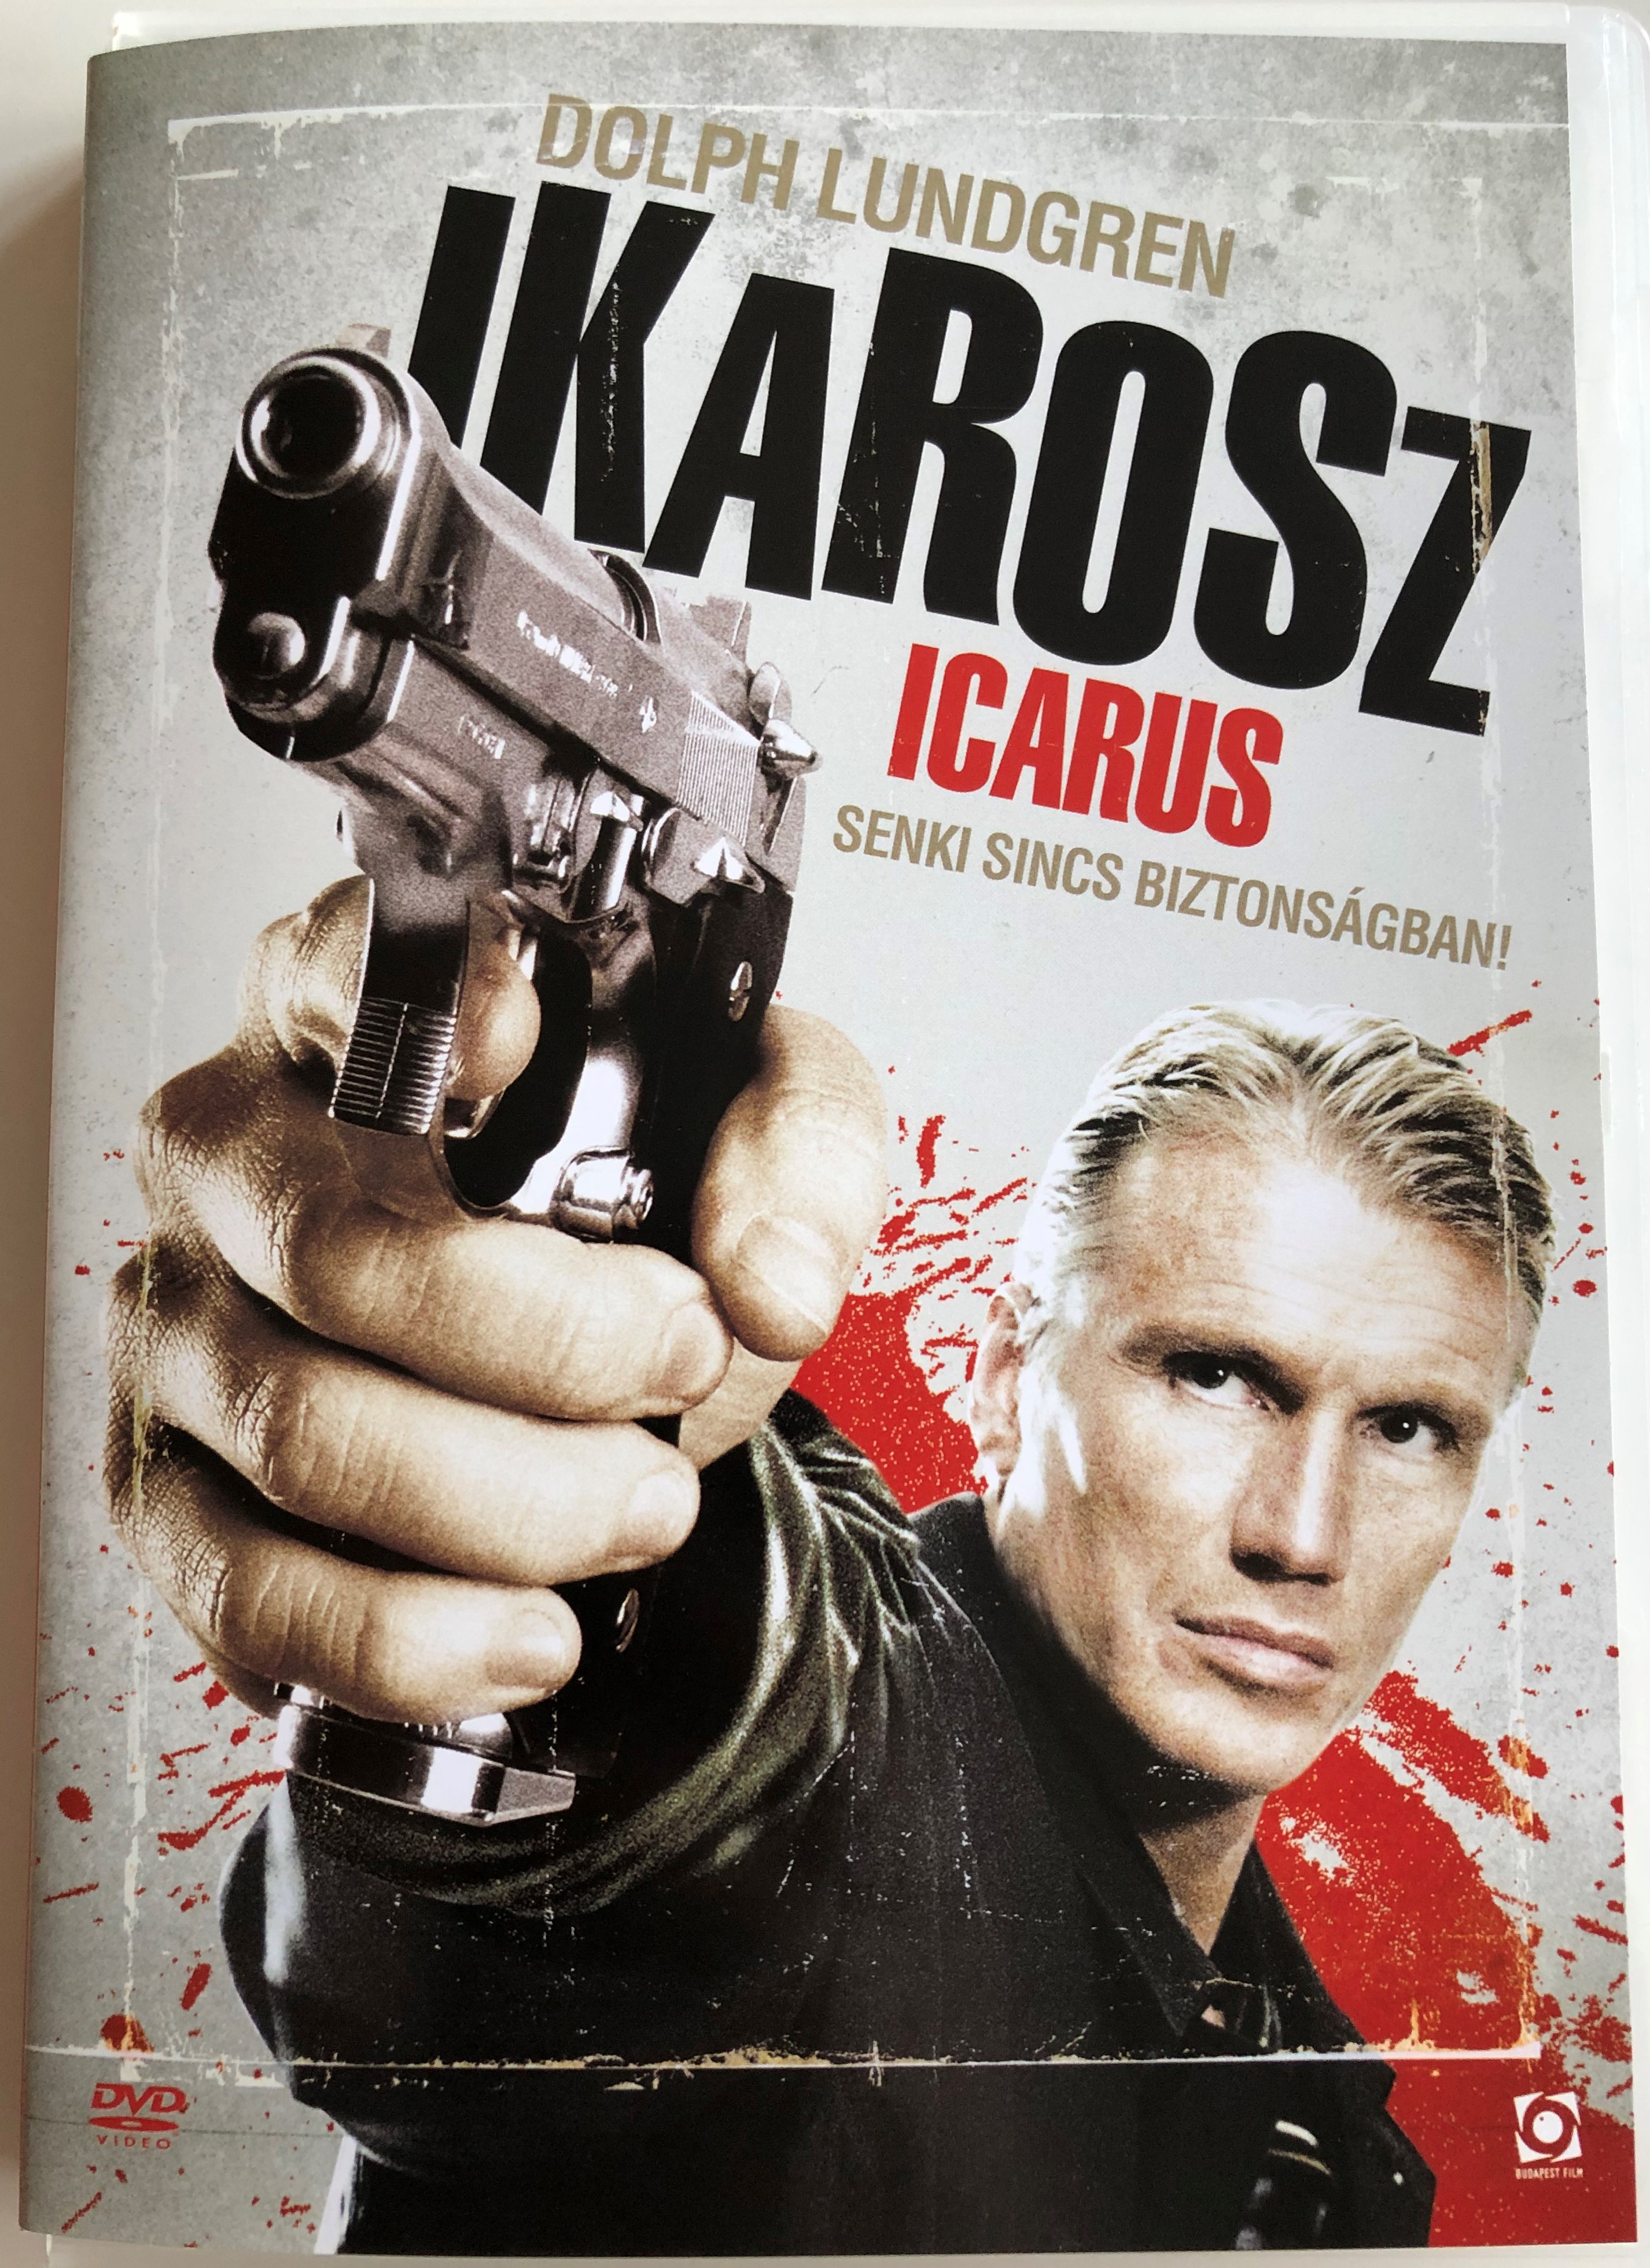 Icarus DVD 2009 Ikarosz - Senki sincs biztonságban 1.JPG